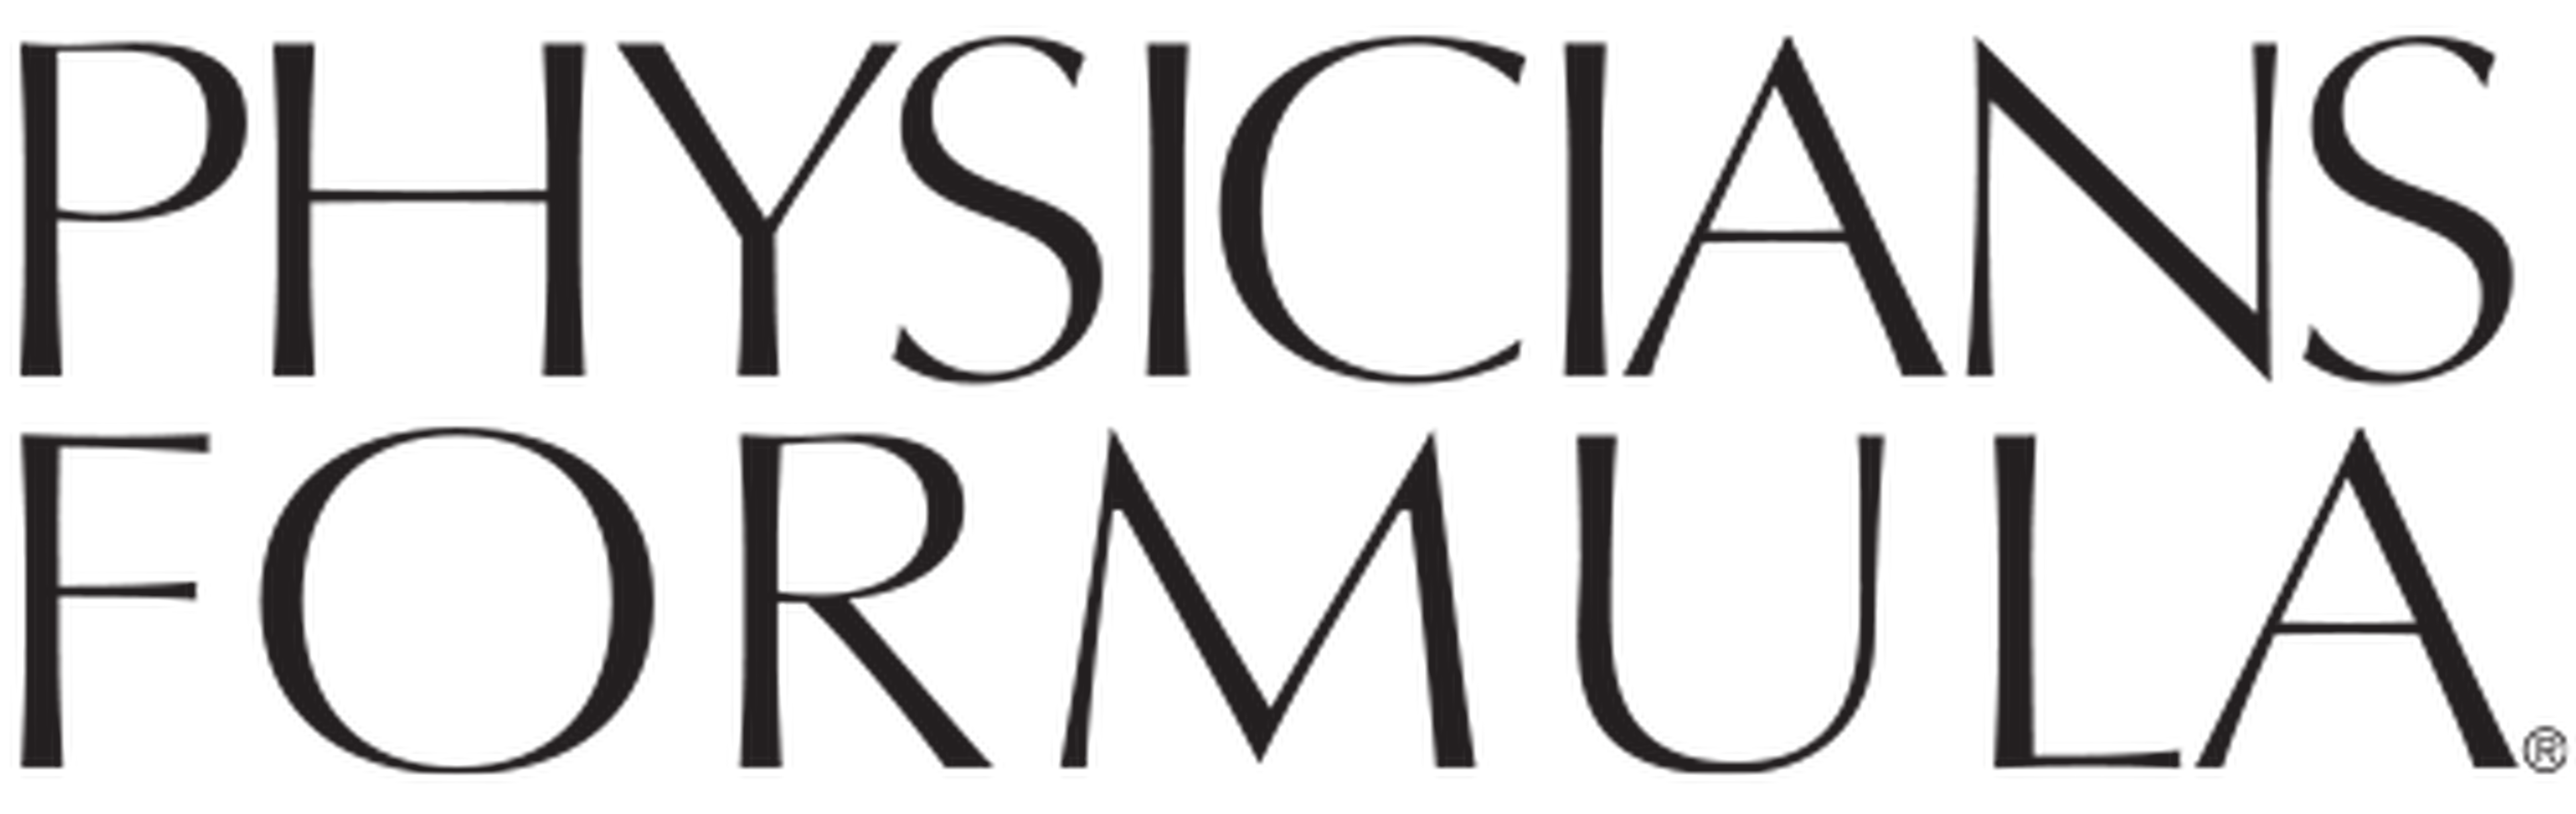 Physicians Formula logotype